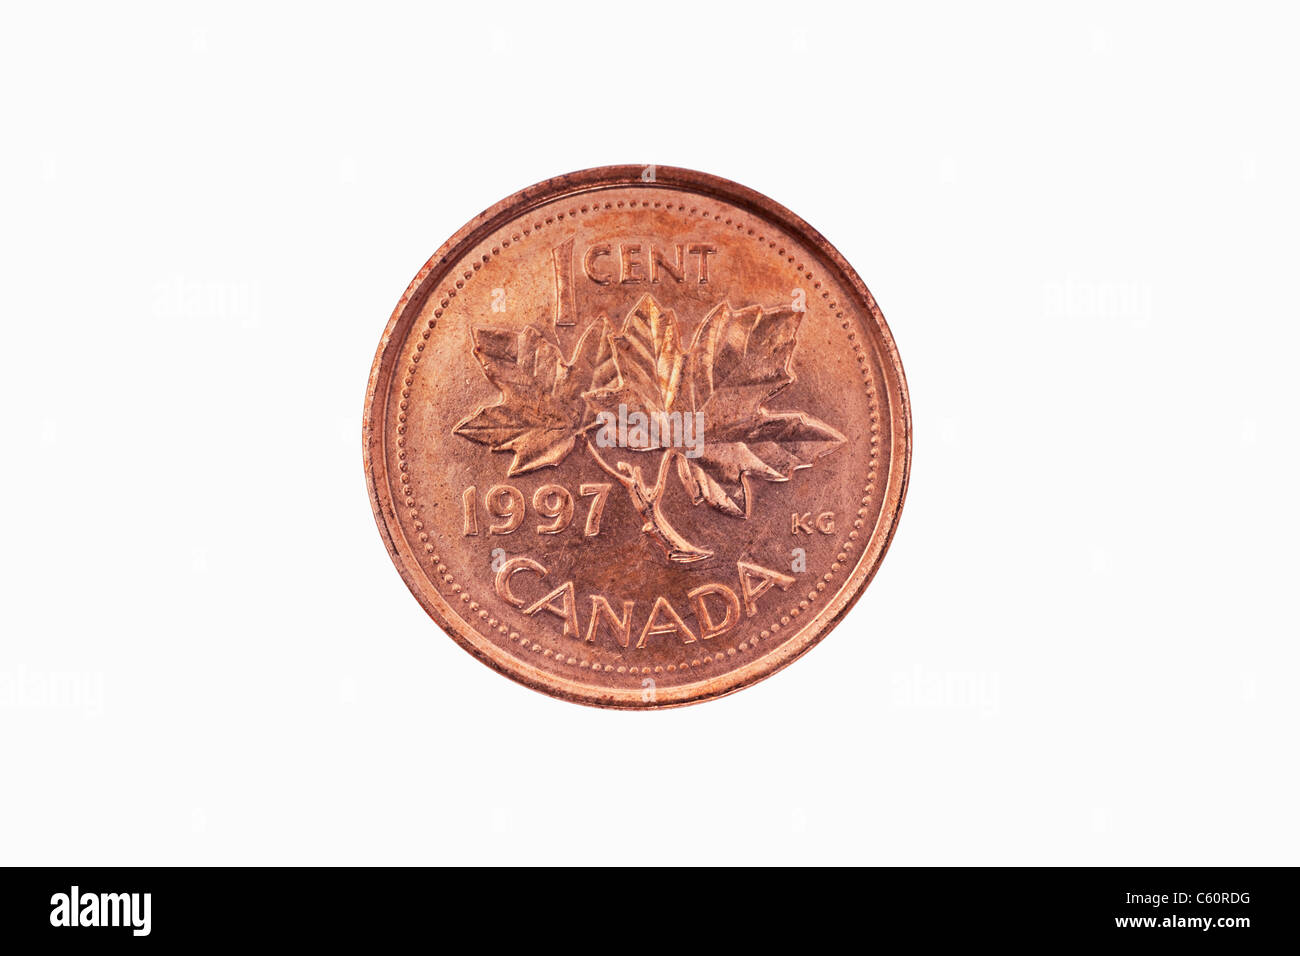 Detailansicht einer kanadischen 1 Cent Münze aus dem Jahr 1997 | Detail photo of a 1 Cent coin of Canada from the year 1997 Stock Photo